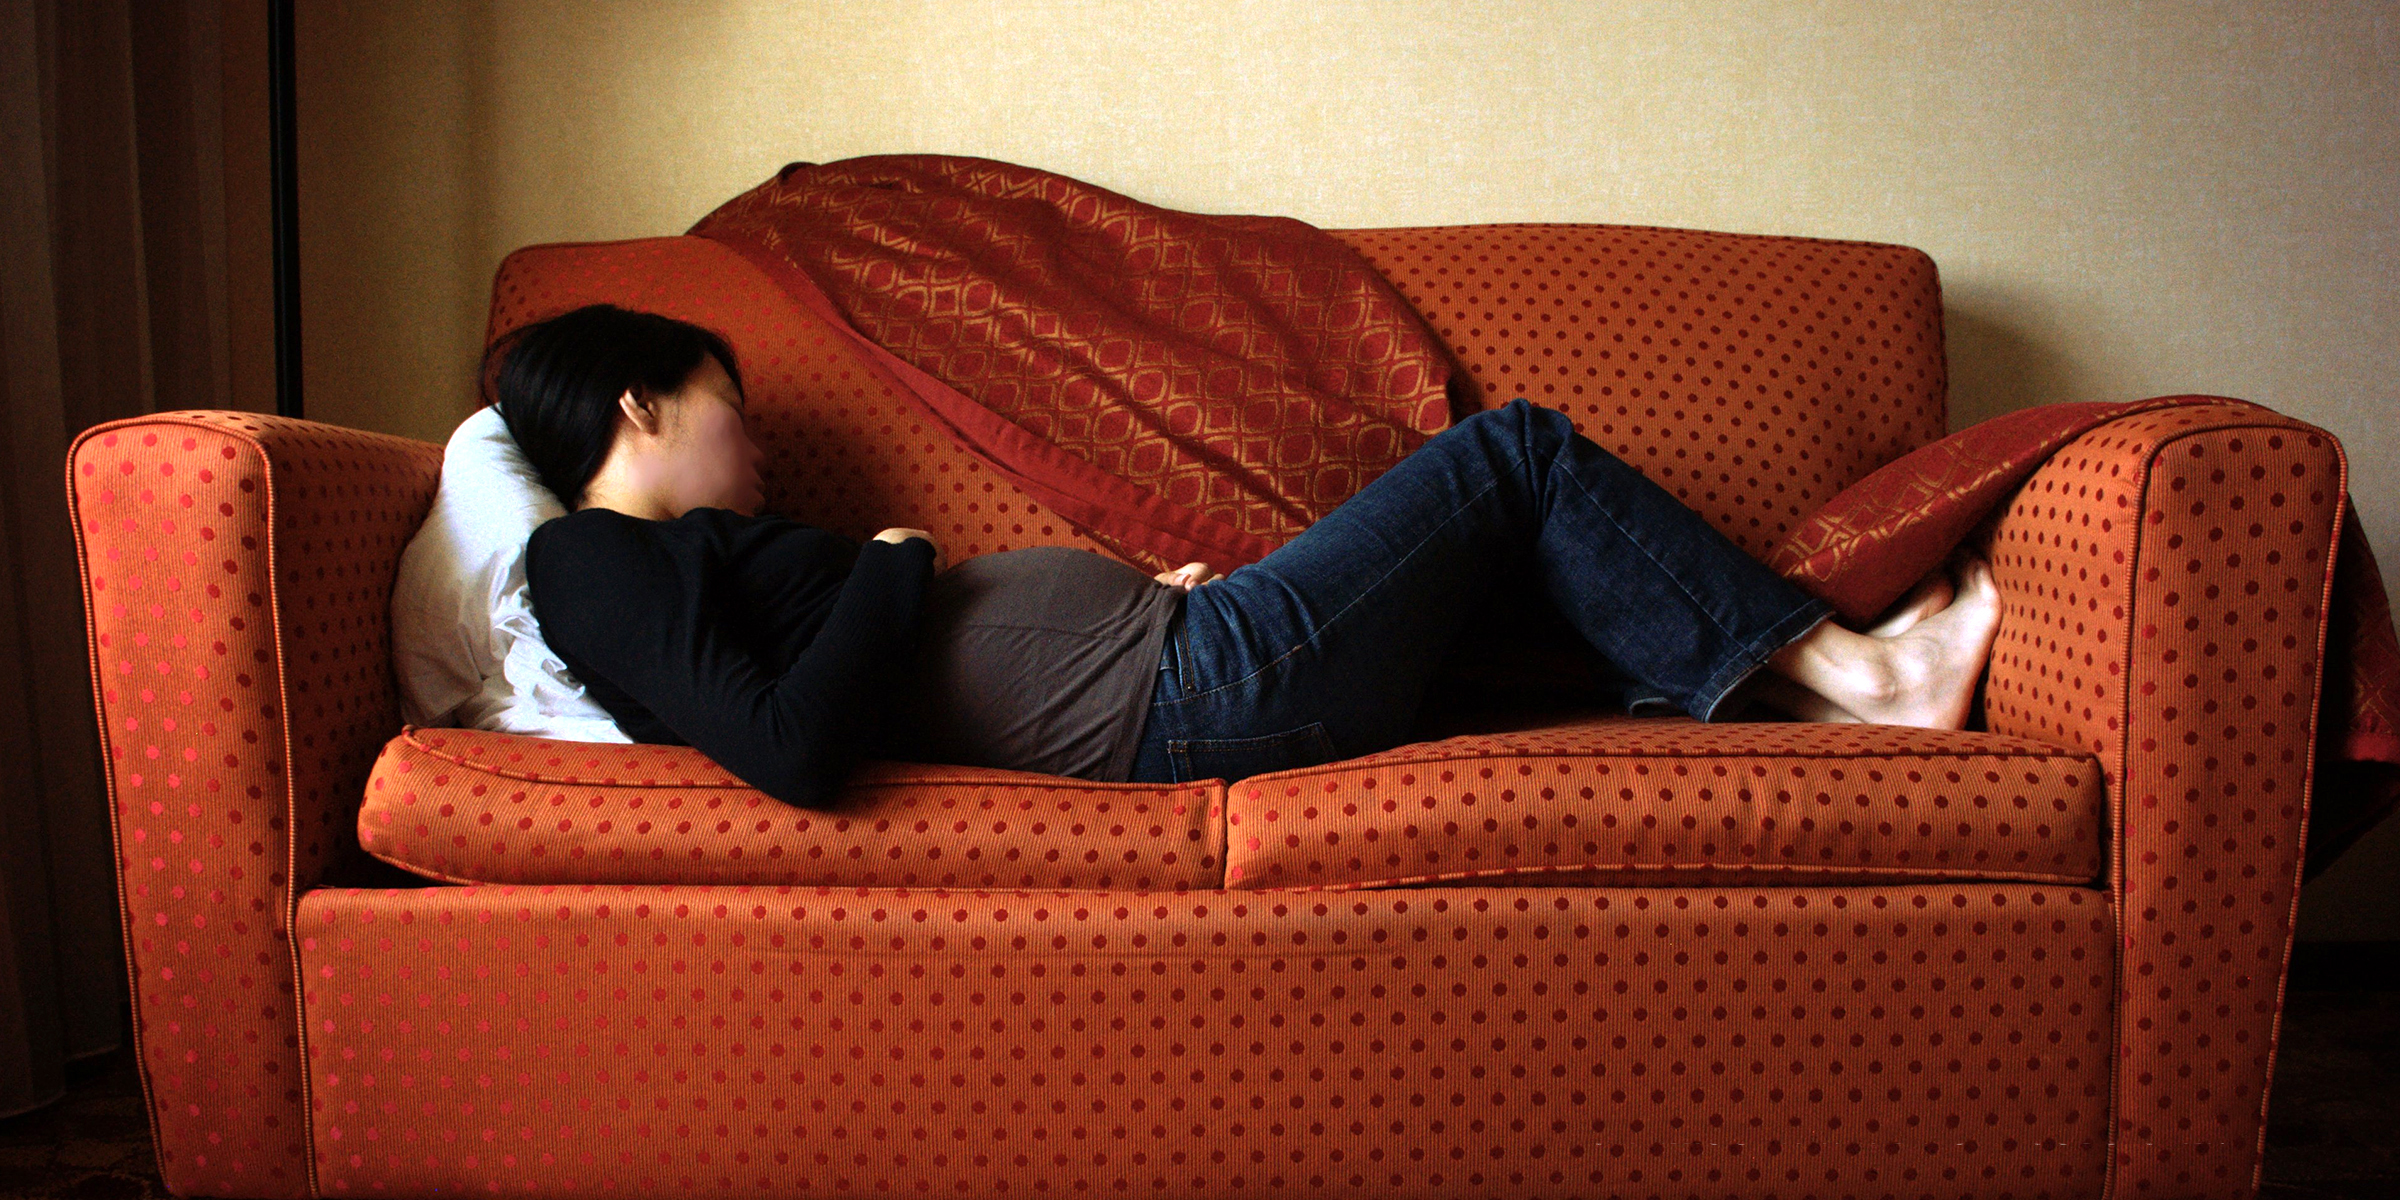 Une femme enceinte endormie sur le canapé | Source : Flickr.com/photos/koadmunkee/